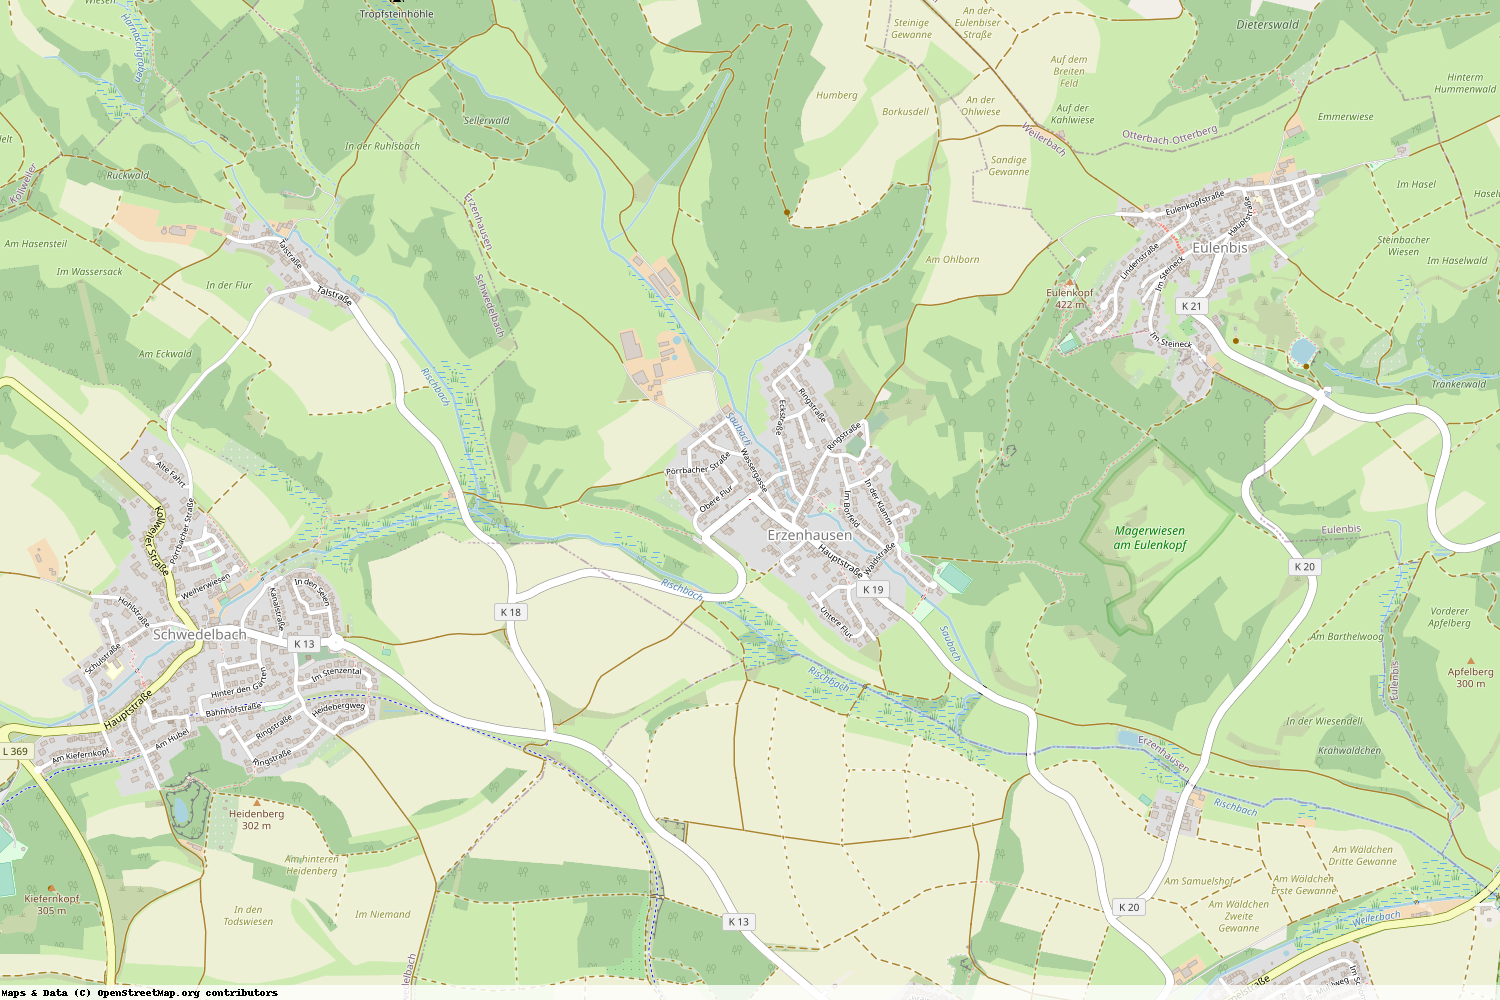 Ist gerade Stromausfall in Rheinland-Pfalz - Kaiserslautern - Erzenhausen?